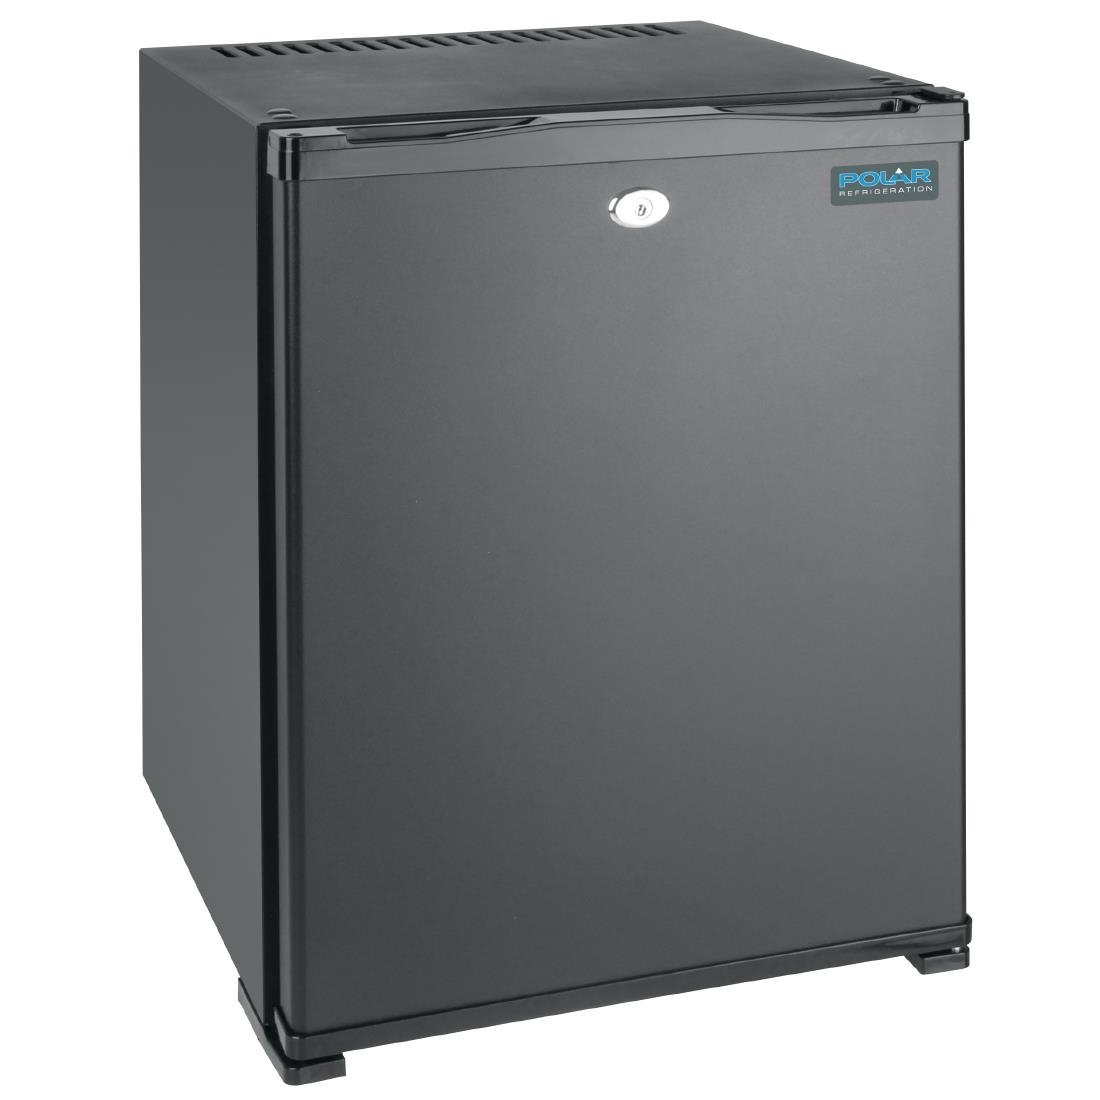 Starrer tragbarer Kühlschrank 32L thermolar grau